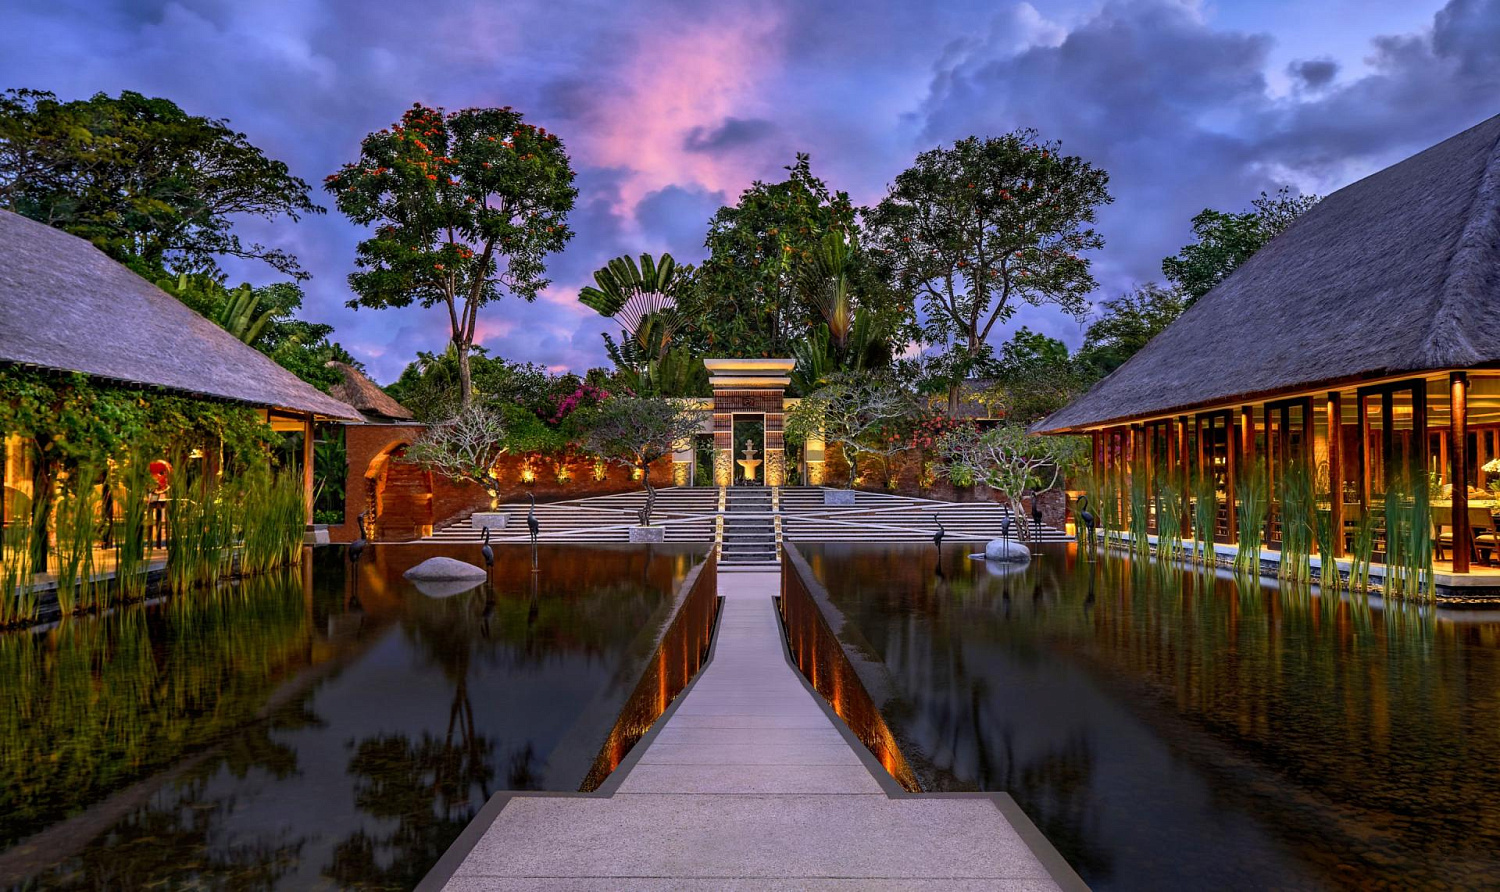 Amarterra Villas Bali Nusa Dua - MGallery Collection